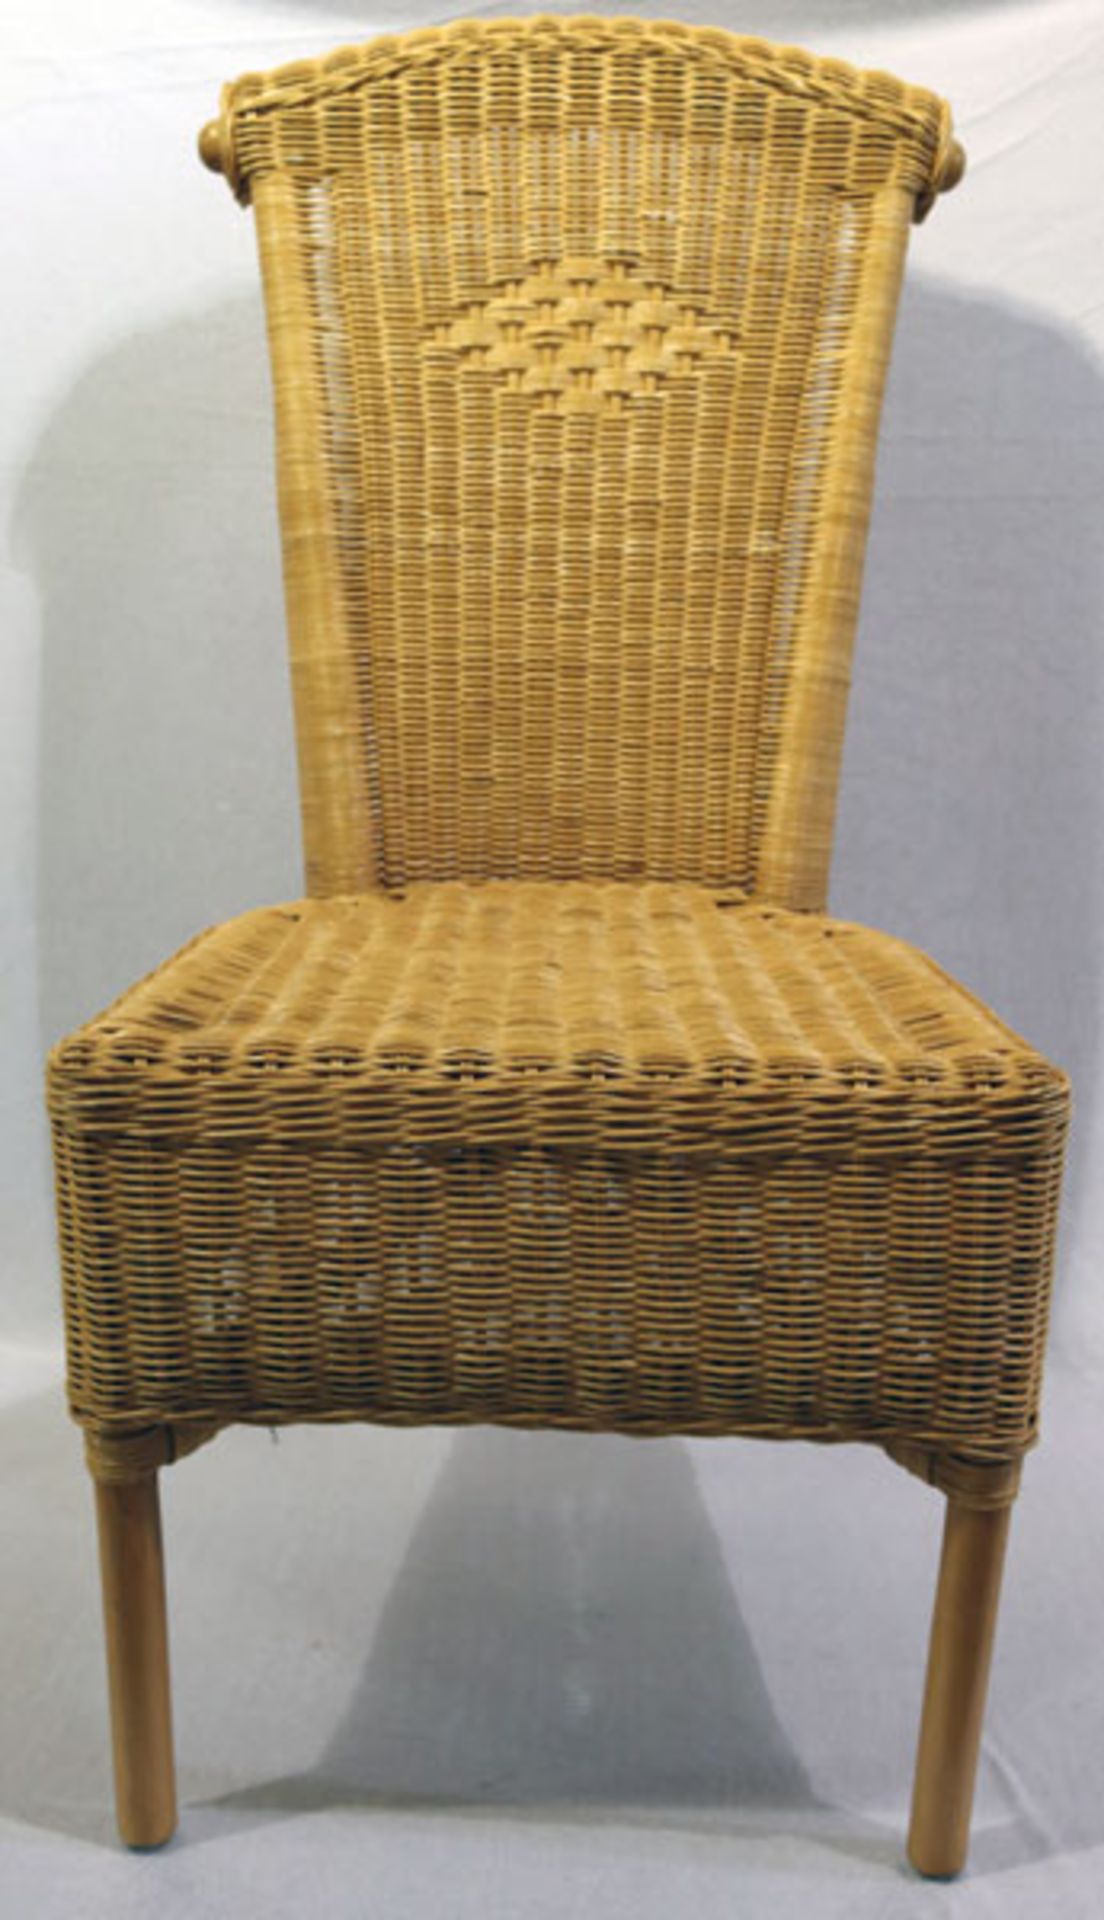 Satz von 6 Rattan-Stühlen und 2 Armlehnstühlen, H 99 cm, B 47 cm, T 41 cm, und H 98 cm, B 60 cm, T